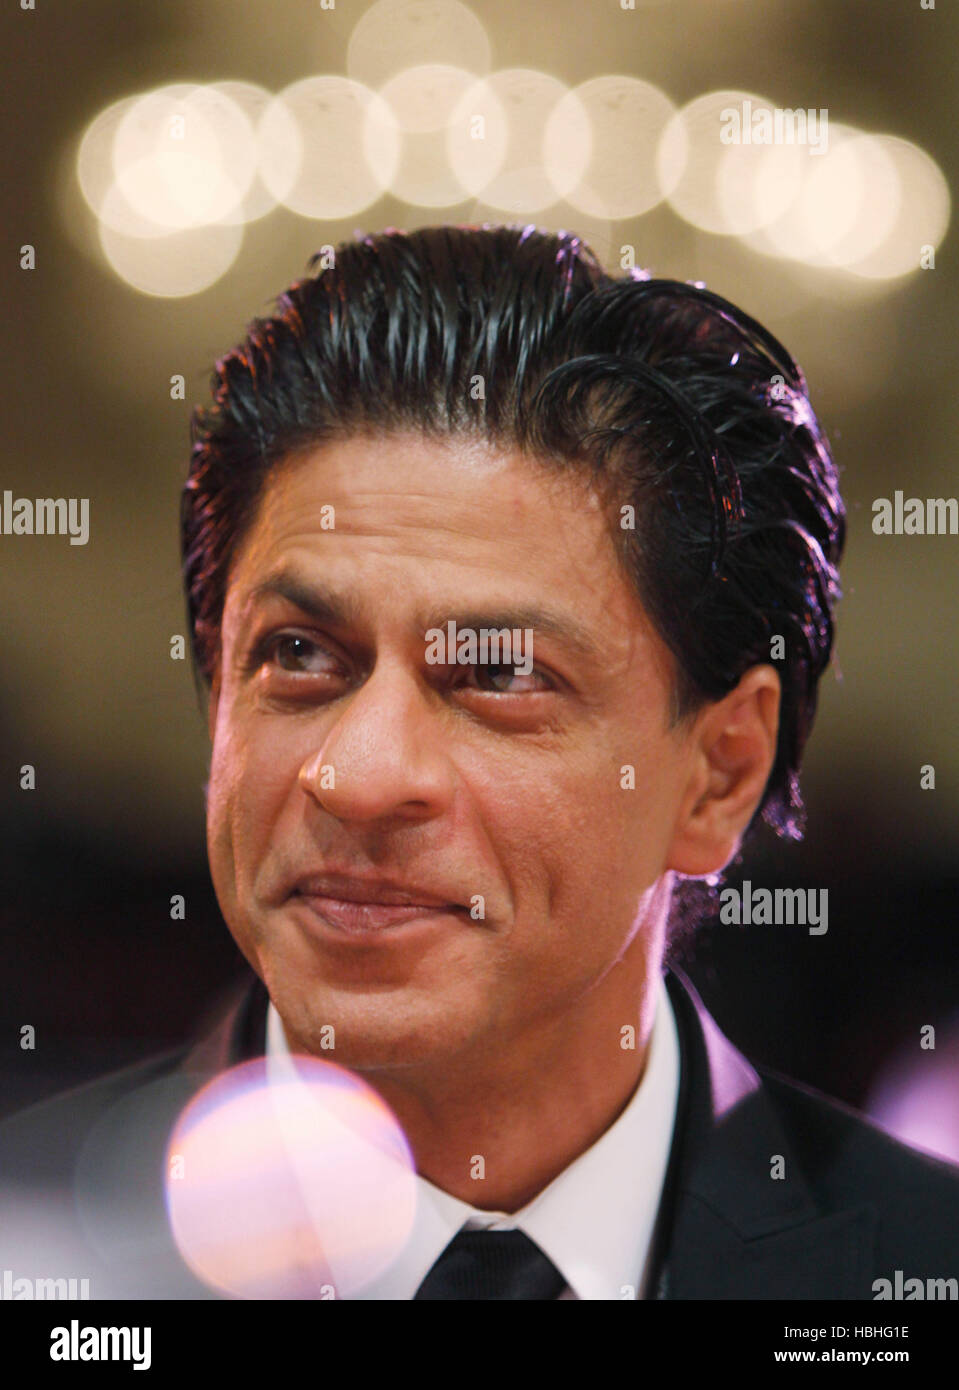 Shahrukh Khan, attore indiano Bollywood ritratto ai Forbes Leadership Awards a Mumbai India 21 ottobre 2011 Foto Stock